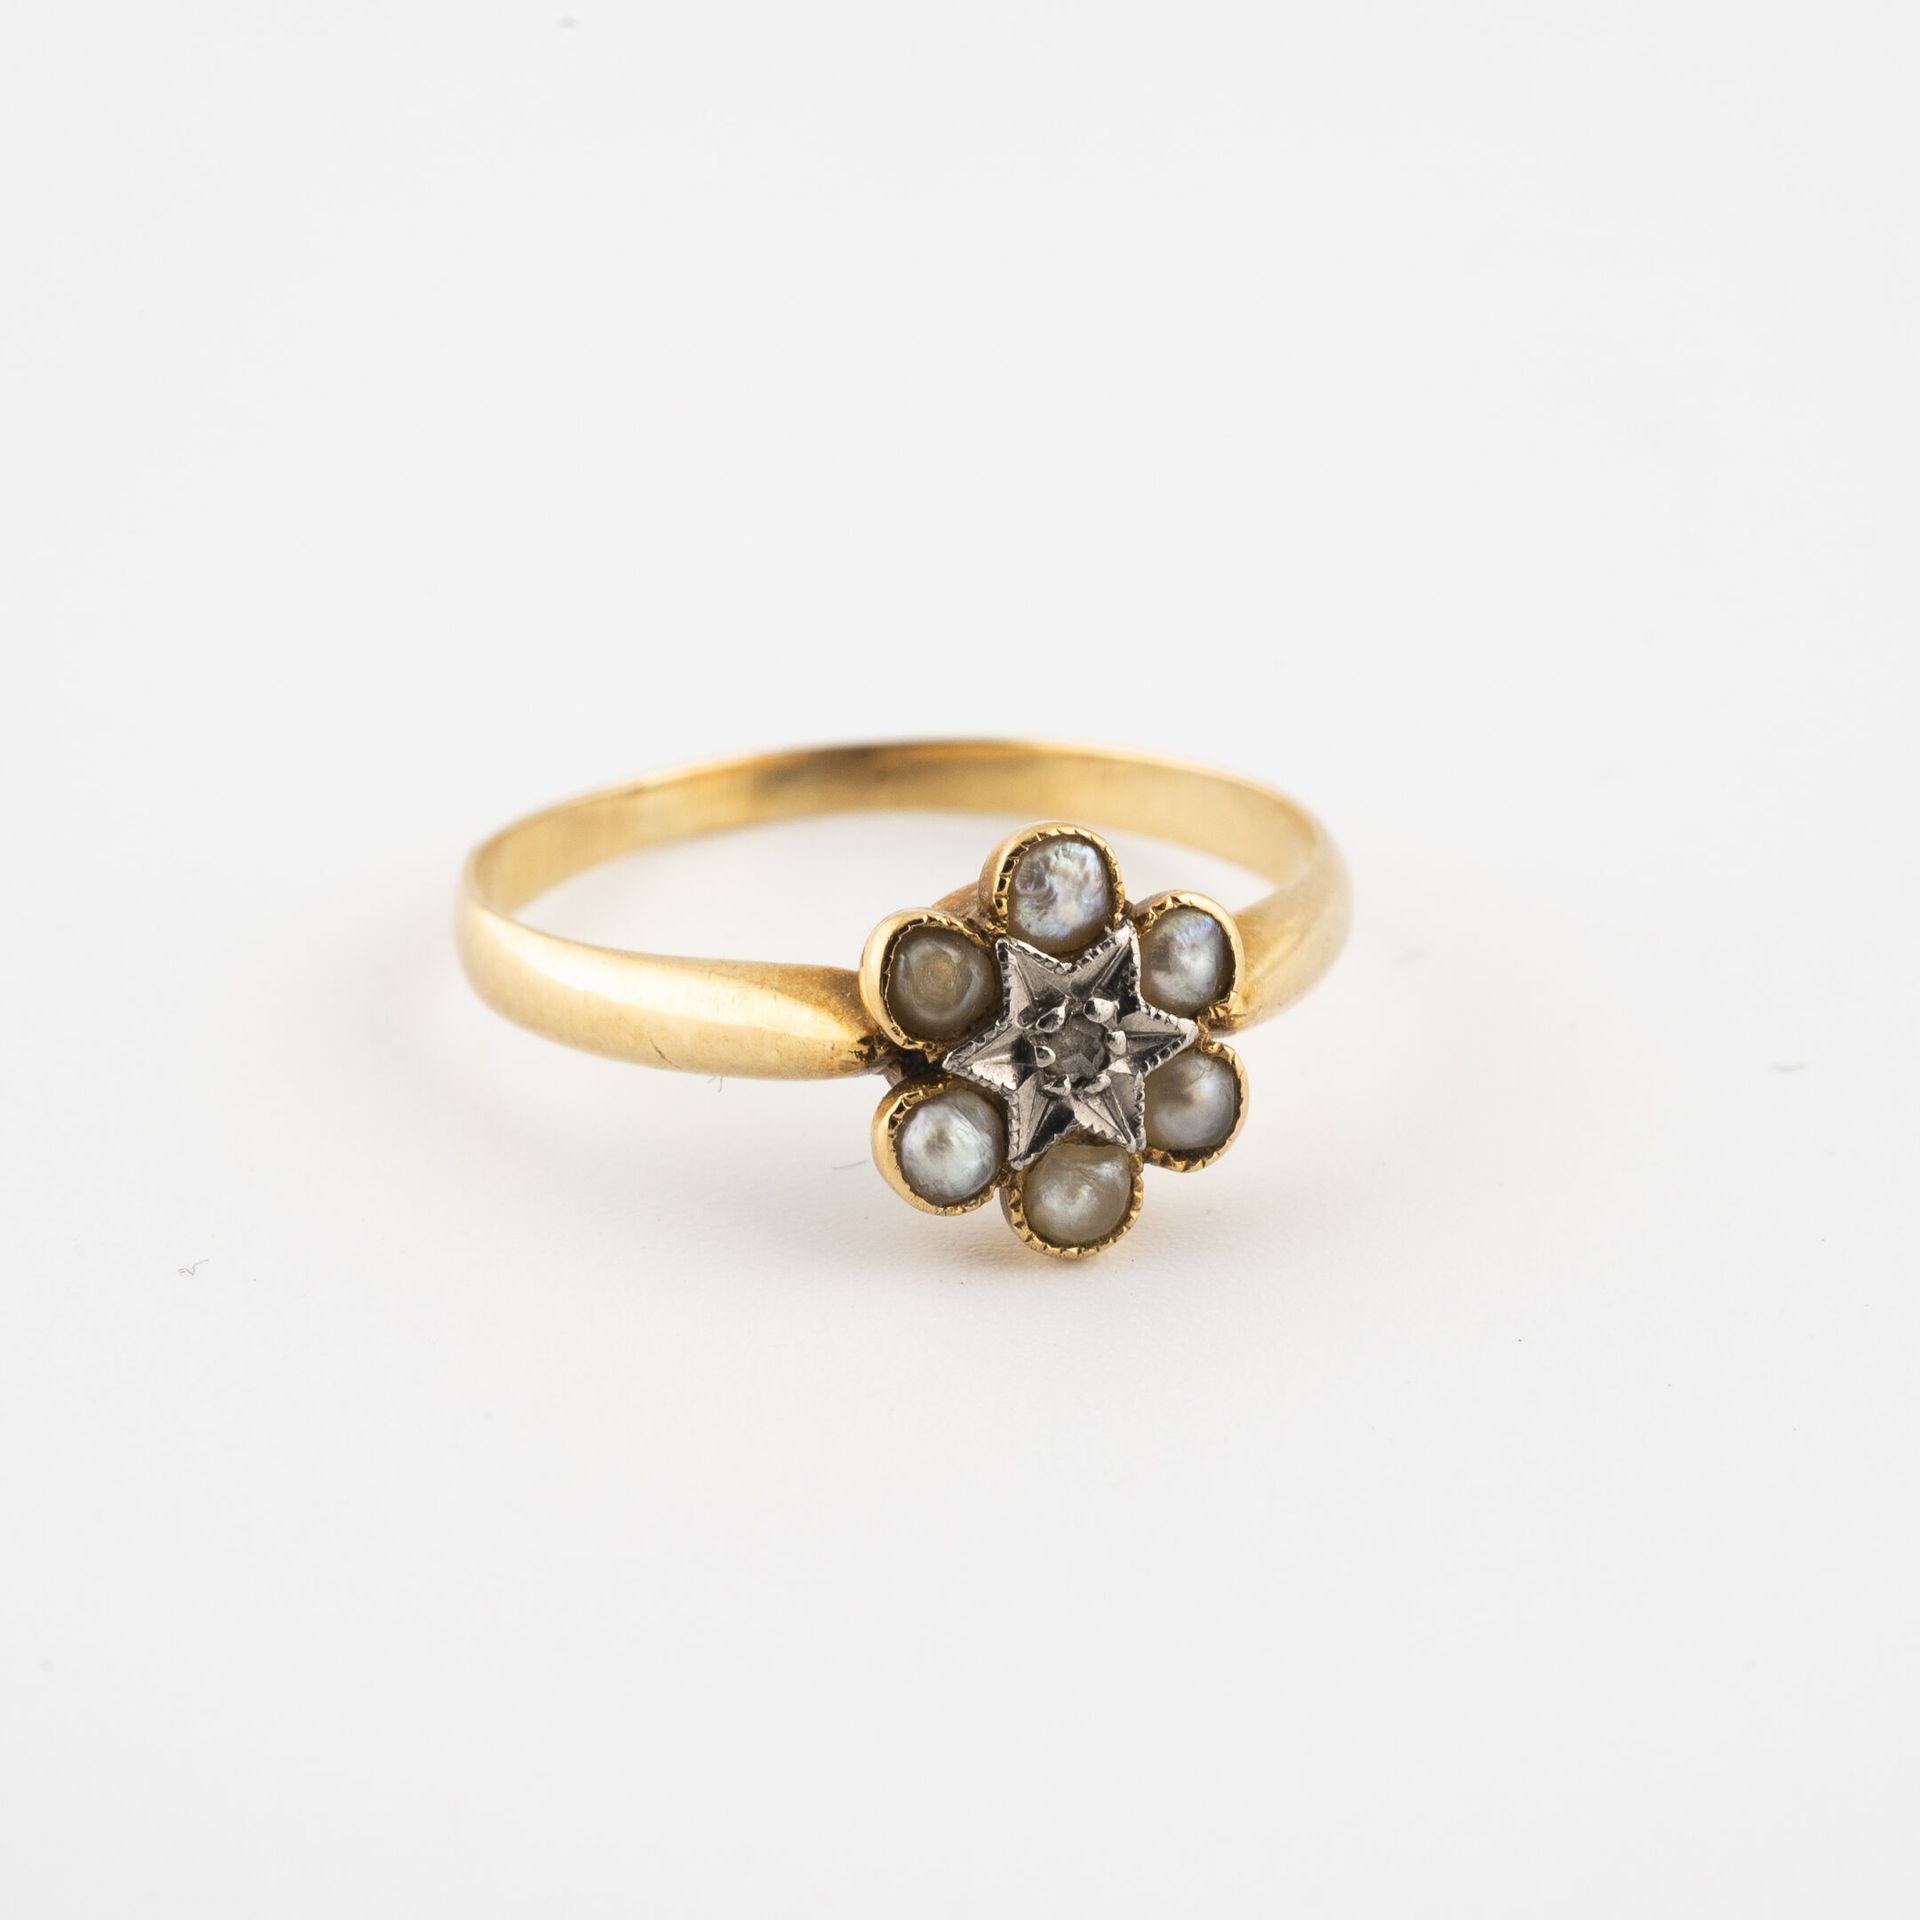 Null 精致的黄金（750）戒指，上面有一个菊花图案，以老式切割钻石为中心，镶嵌着白色马贝珍珠。

毛重：1.5克。- 手指大小：52。

磨损和撕裂。